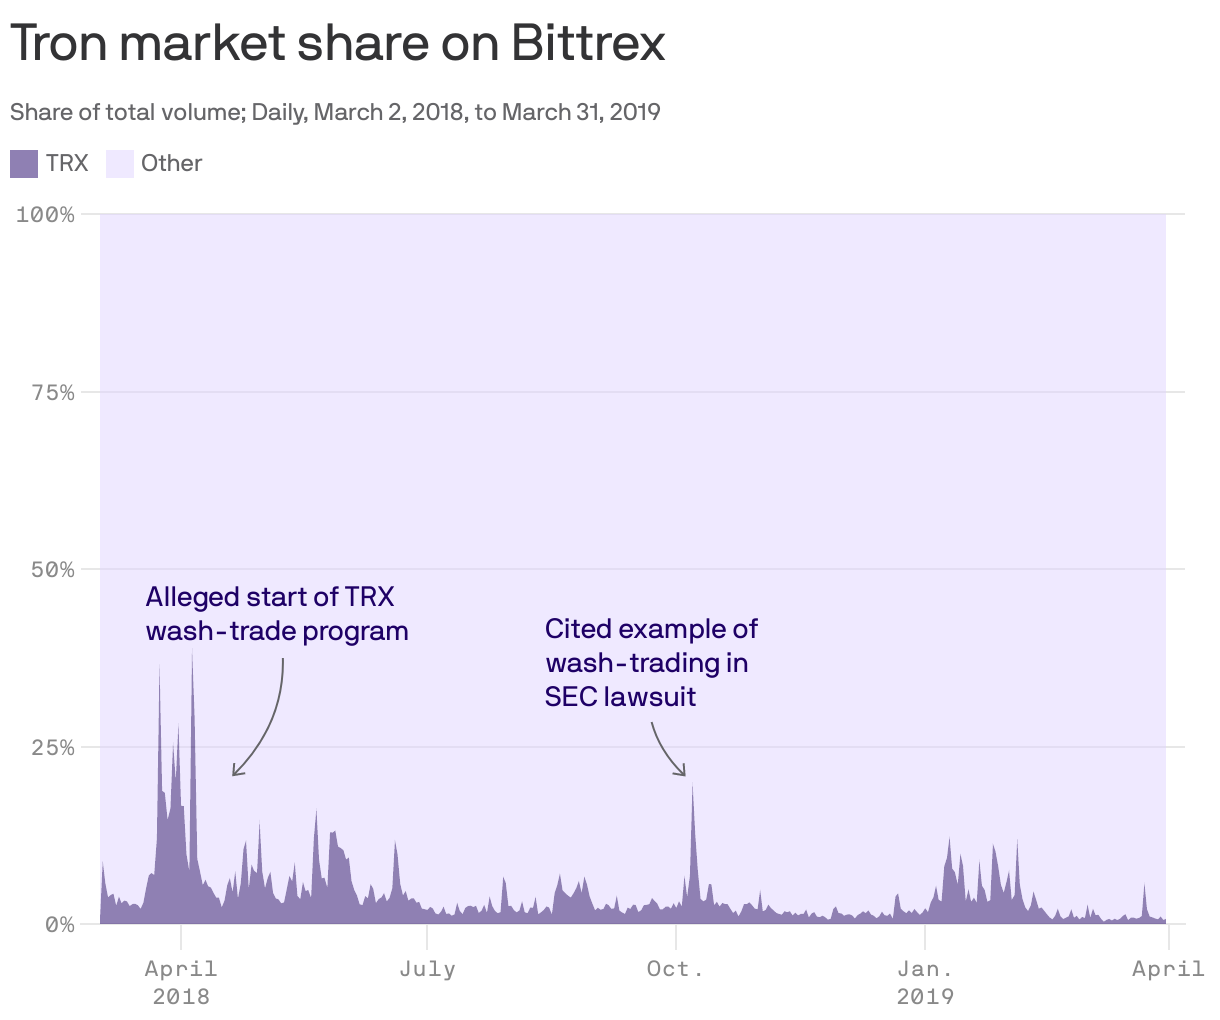 Tron market share on Bittrex